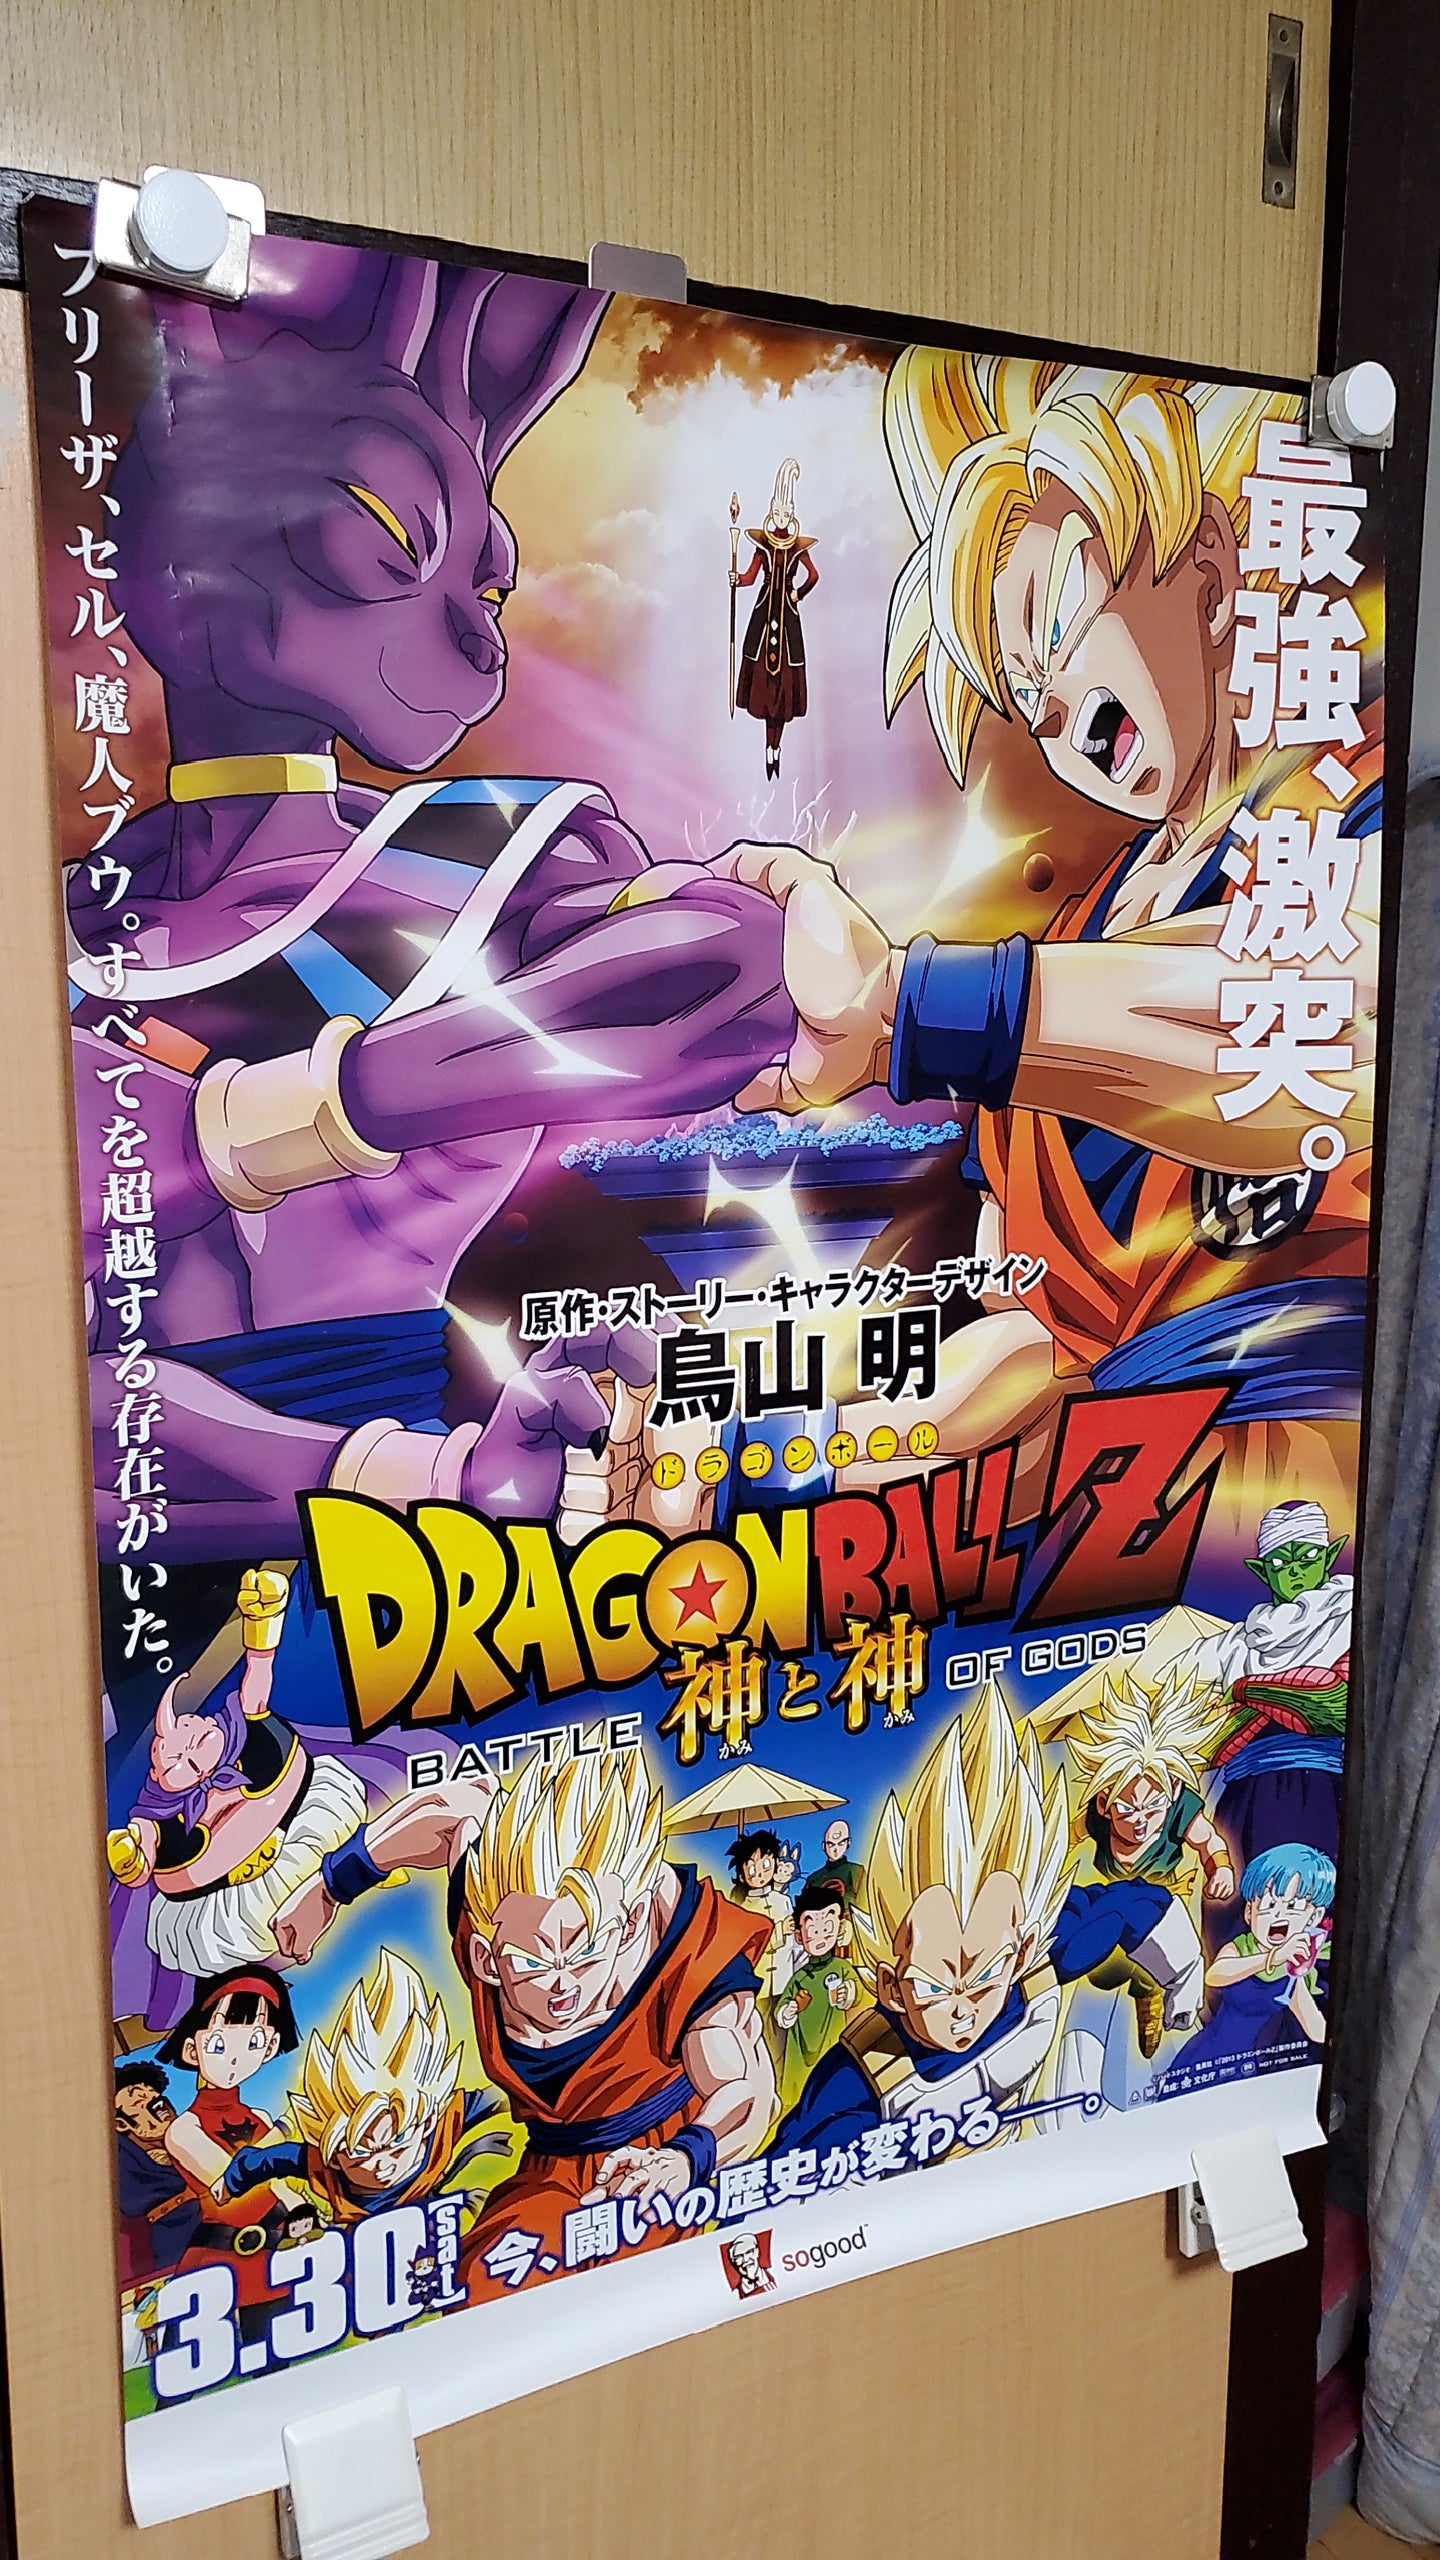 DRAGONBALL Z battle of gods poster - poster / scrool / tapestry japan